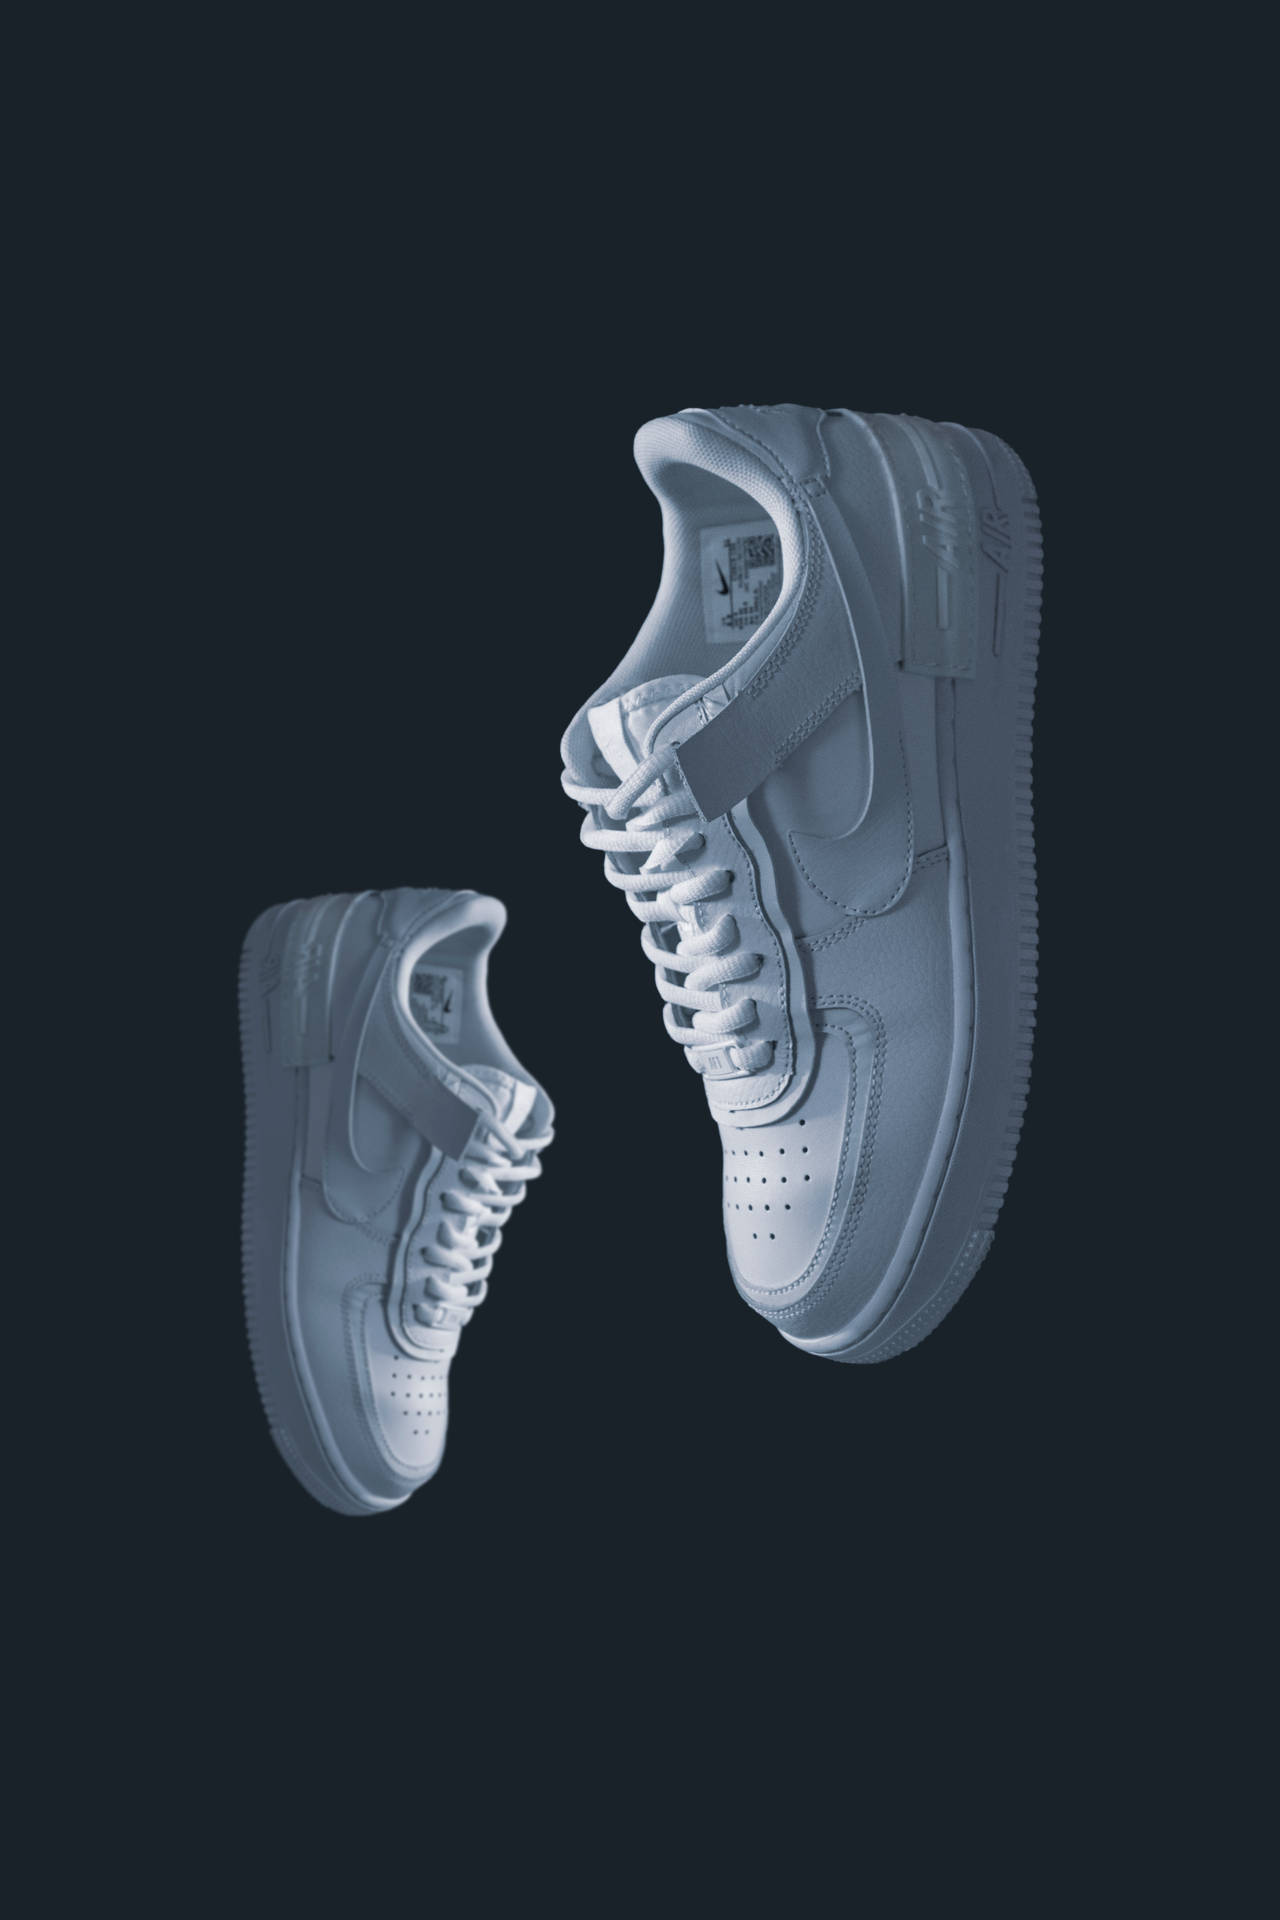 4k White Nike Shoes Image Background